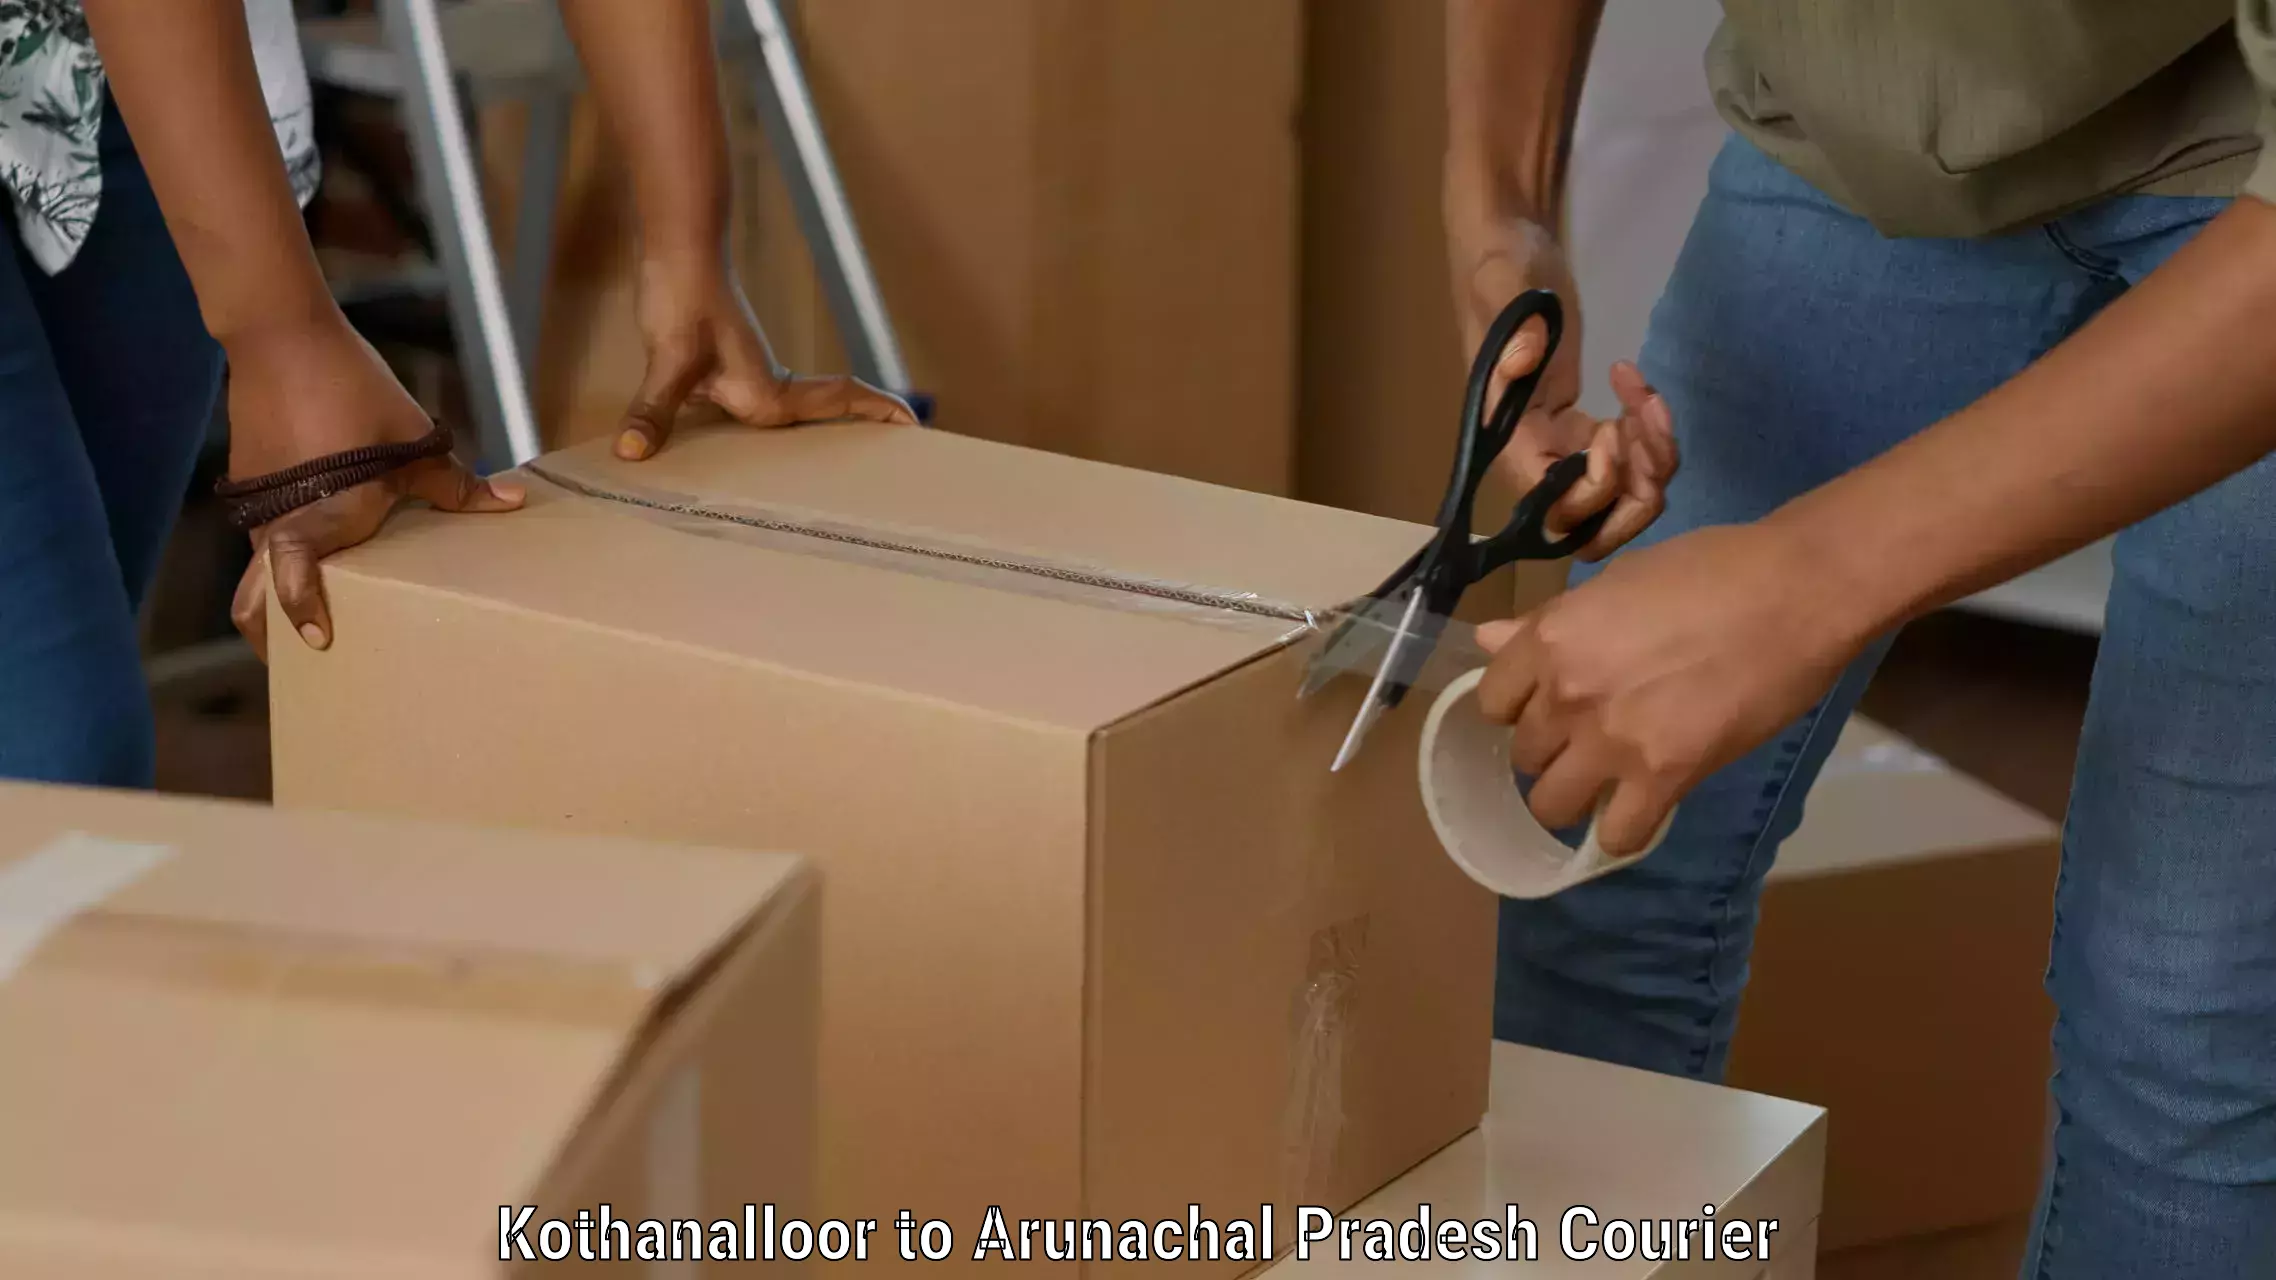 Secure packaging Kothanalloor to Arunachal Pradesh